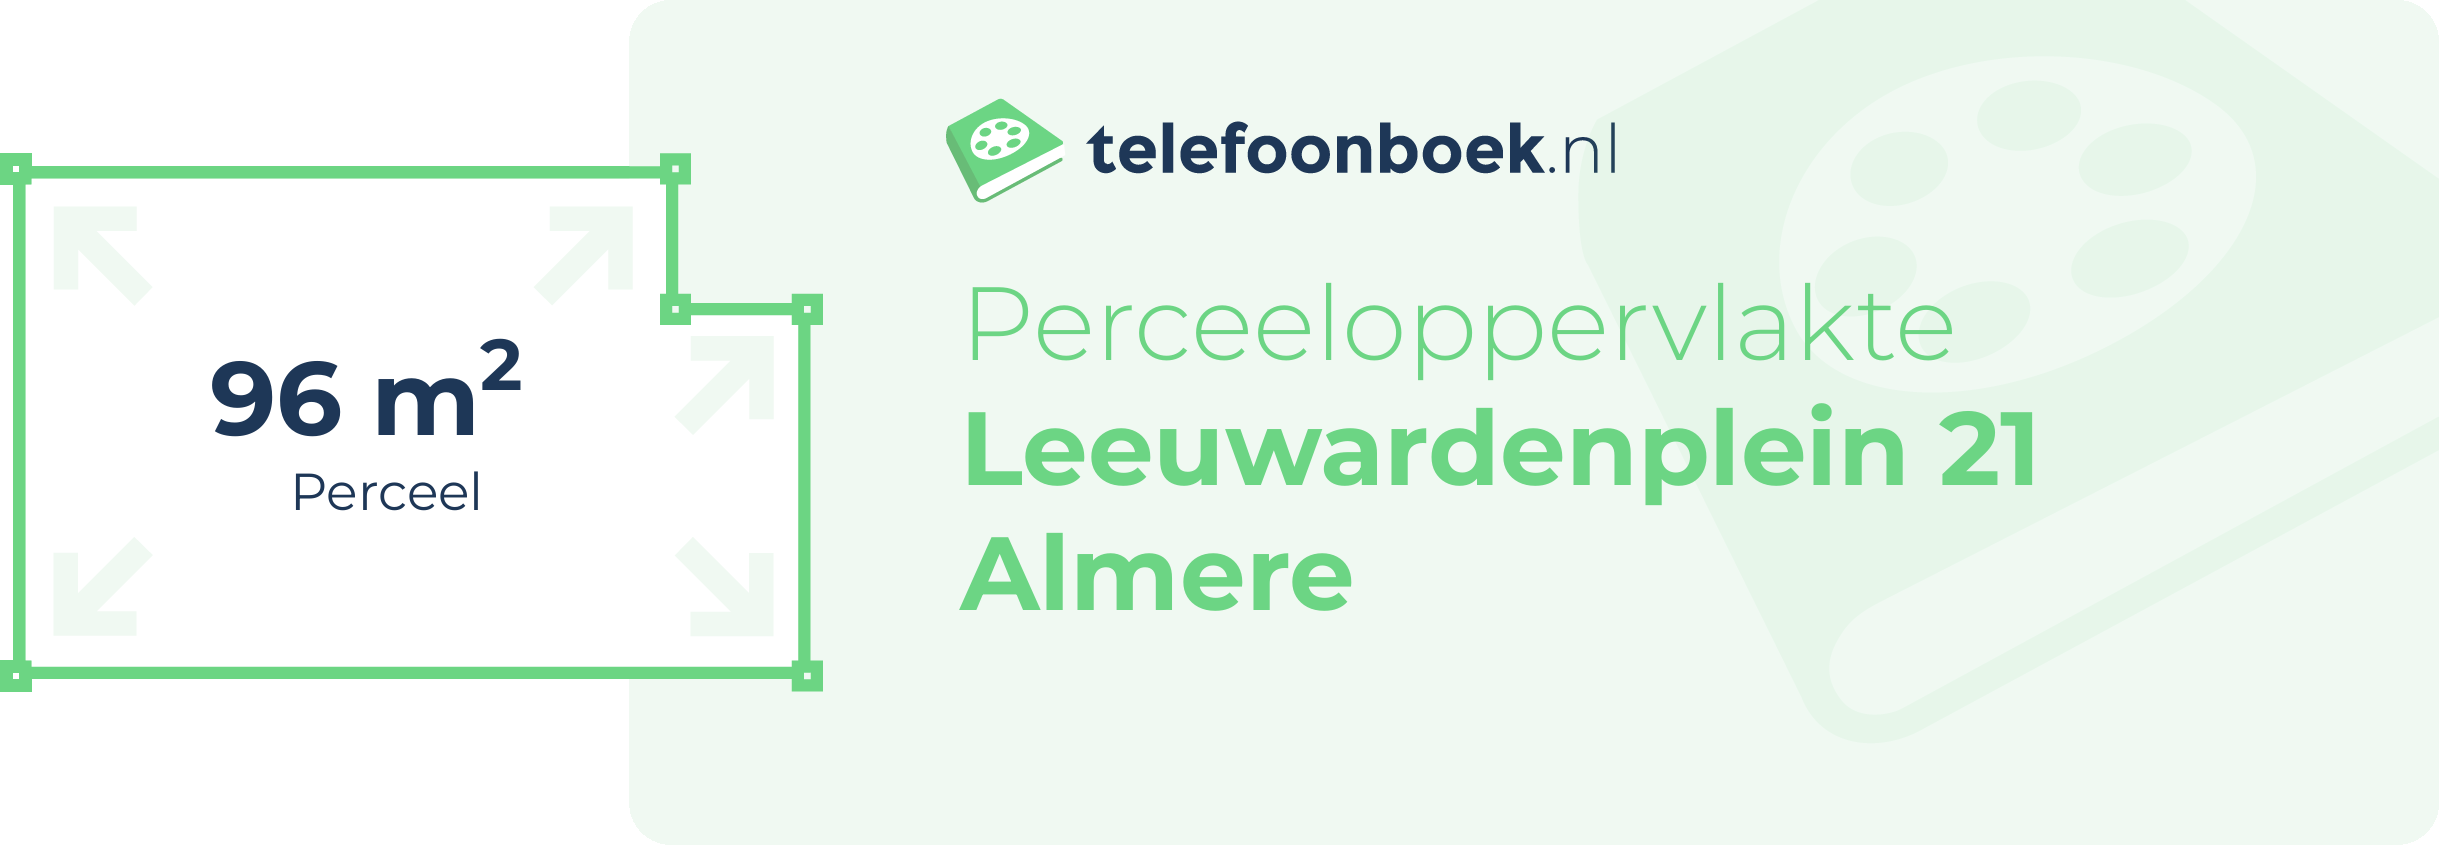 Perceeloppervlakte Leeuwardenplein 21 Almere